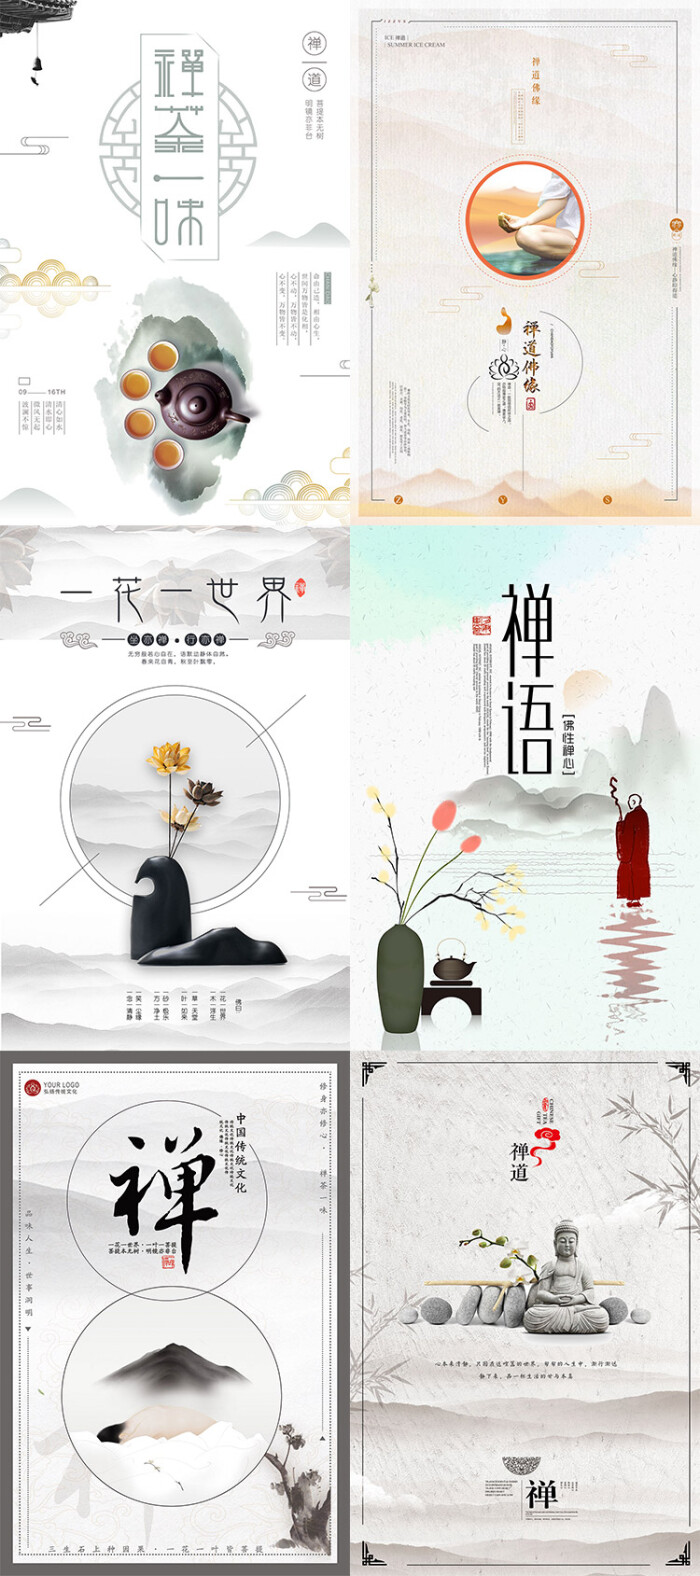 禅道佛茶文化悟性意境水墨传统文化中国风海报装饰画psd素材模板